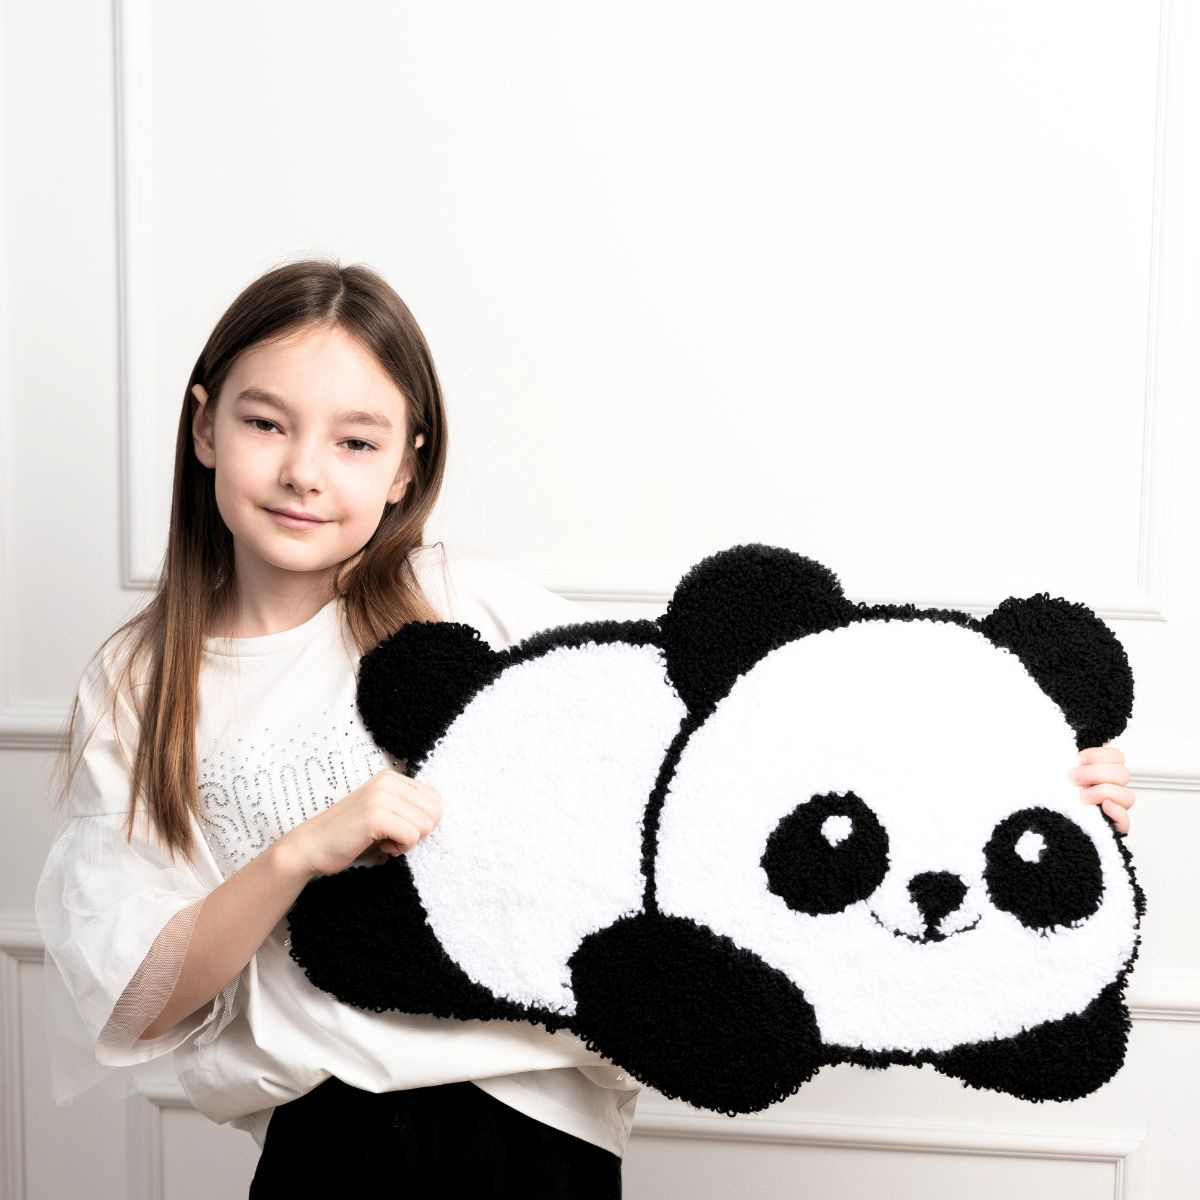 Набор для ковровой вышивки "Панда"  размер 40 х 60 см.